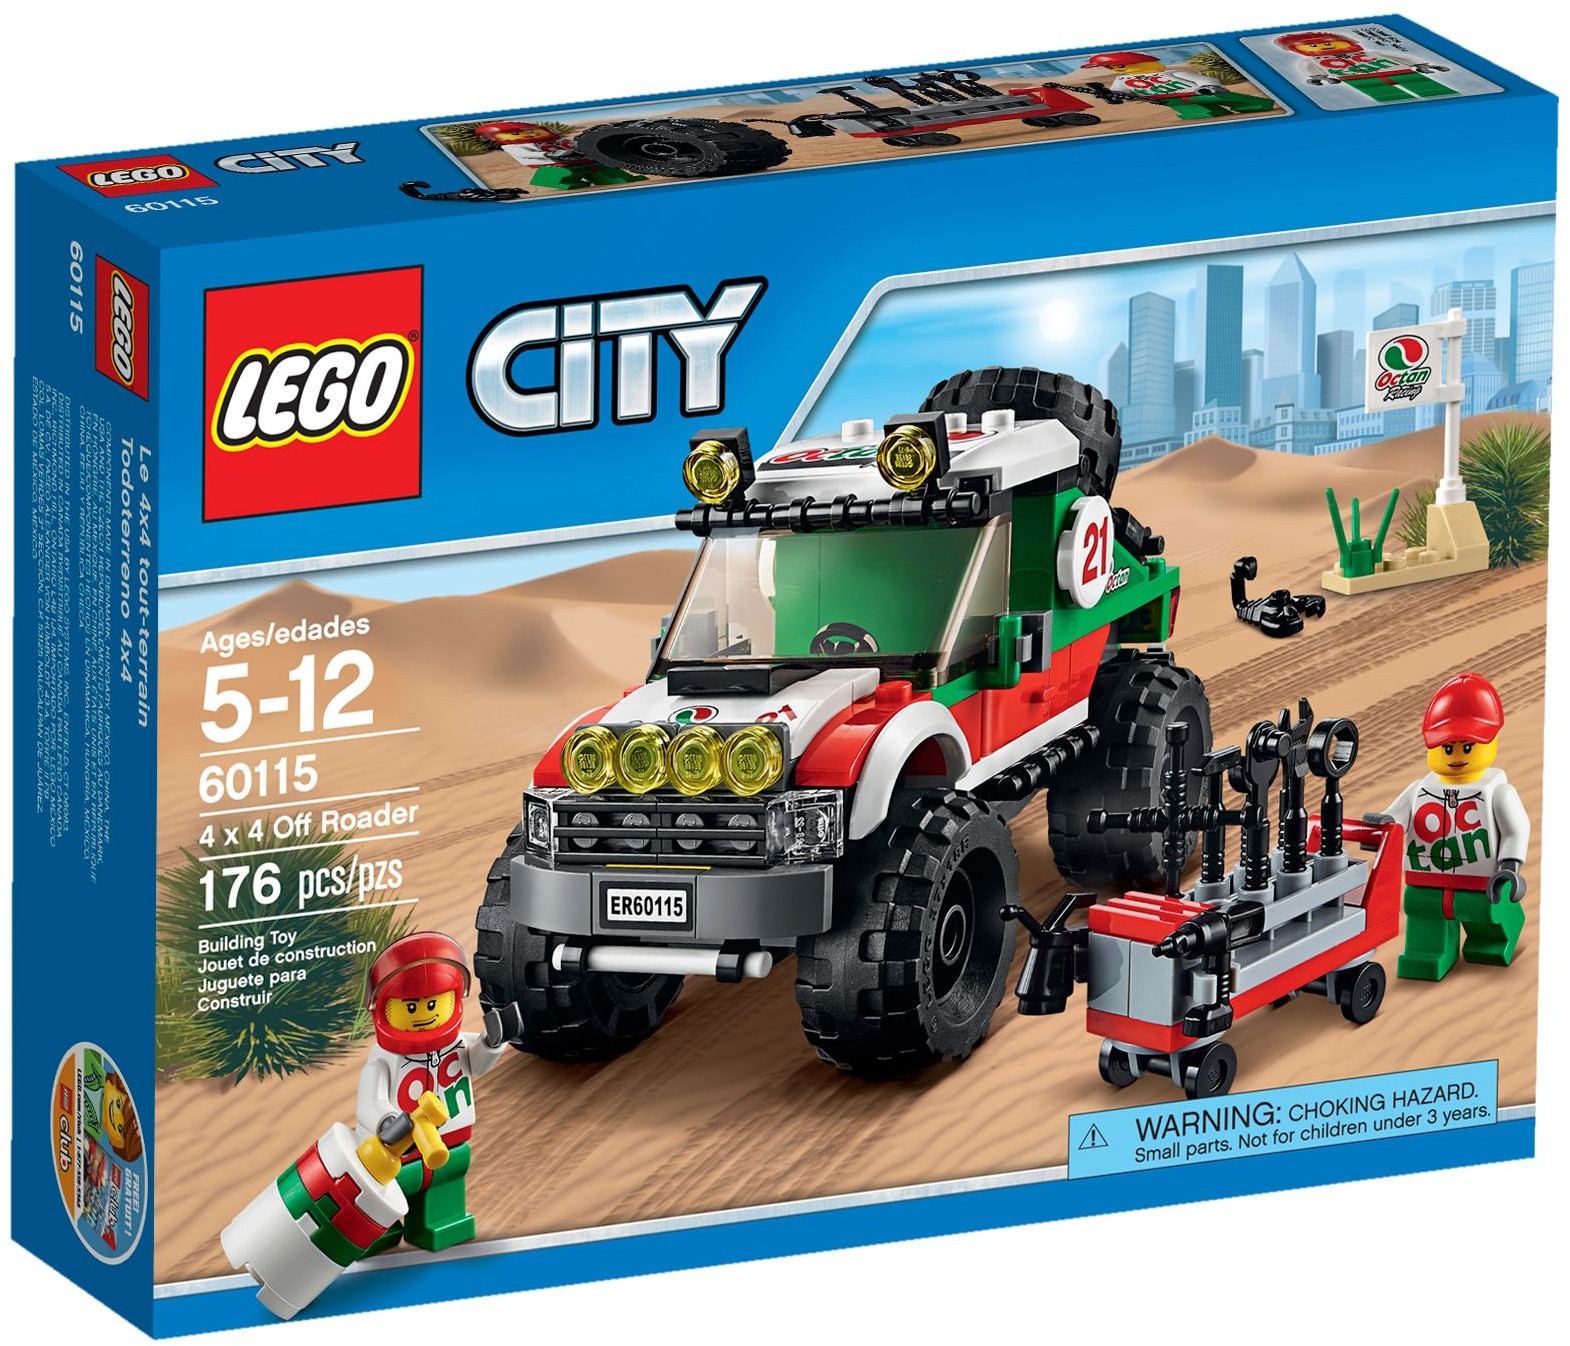 LEGO City 60327 pas cher, La remorque à chevaux